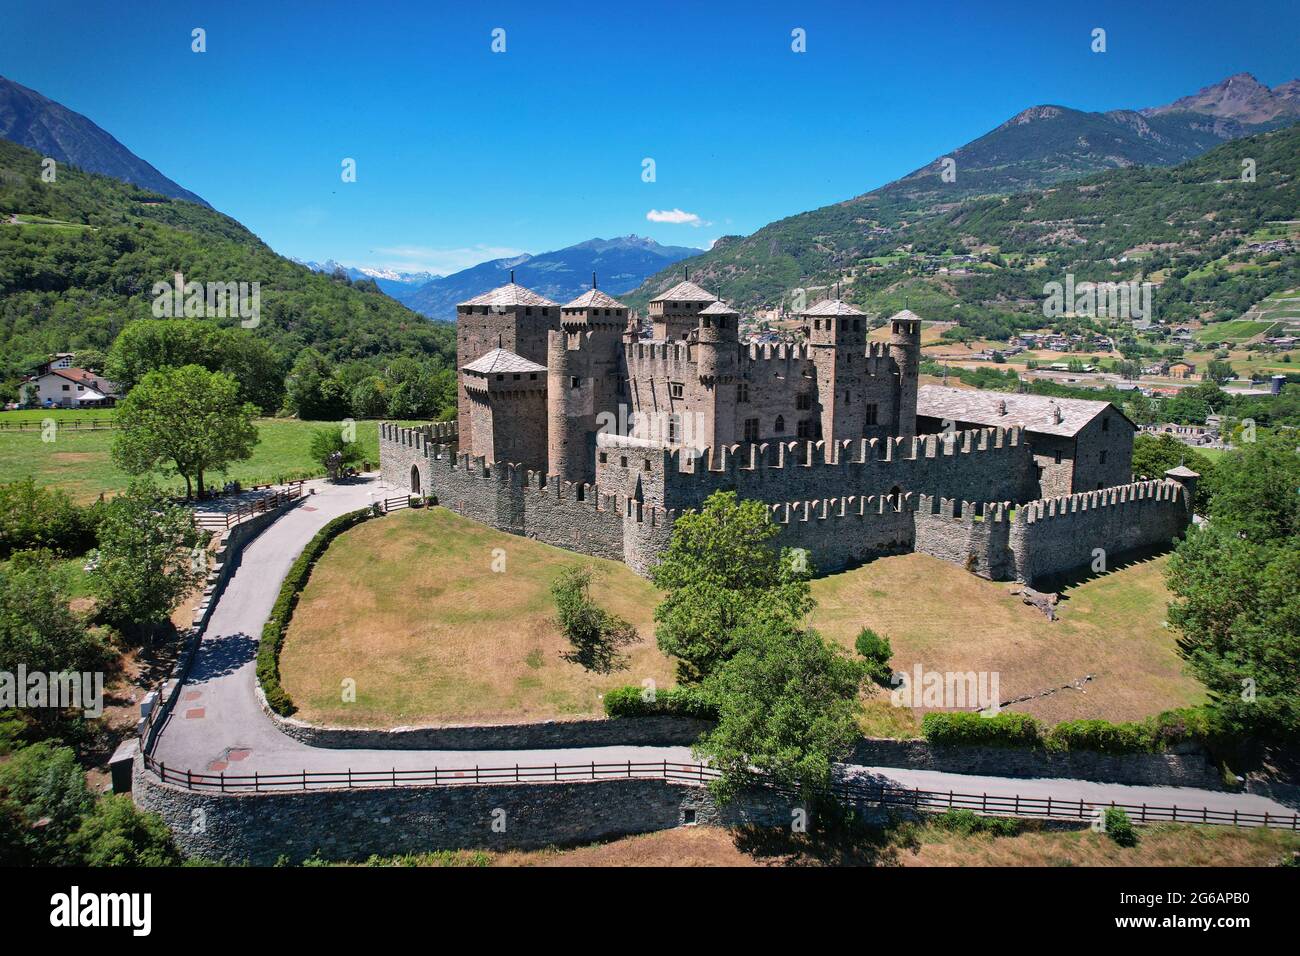 Veduta aerea del Castello di Fenis in Valle d'Aosta. Italia Foto Stock